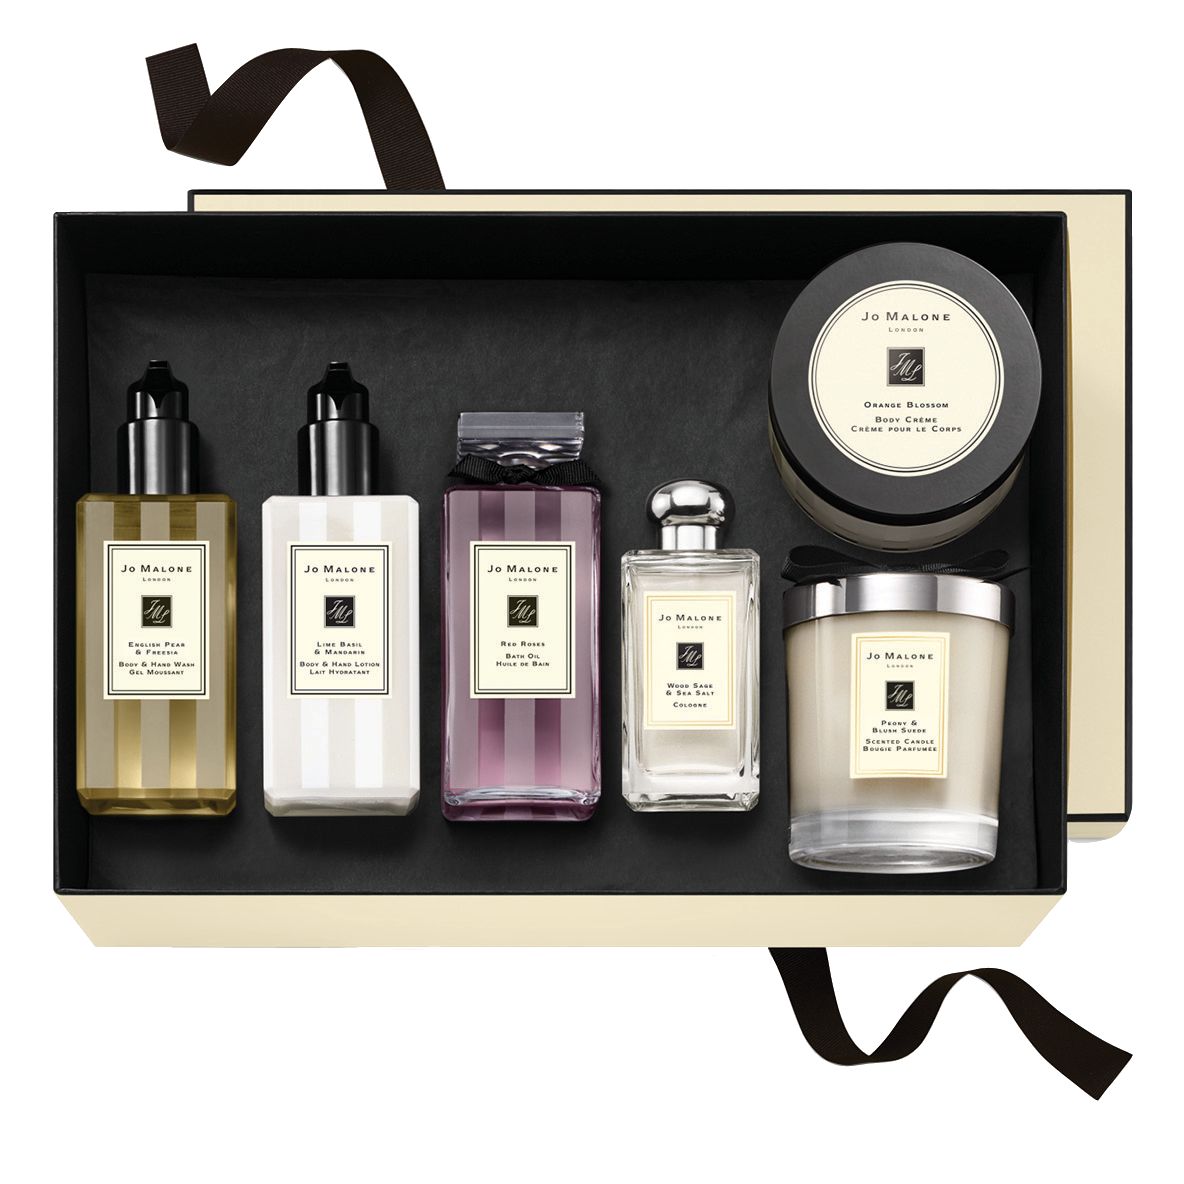 Jo Malone London Luxurious & Indulgent Skincare Gift Set